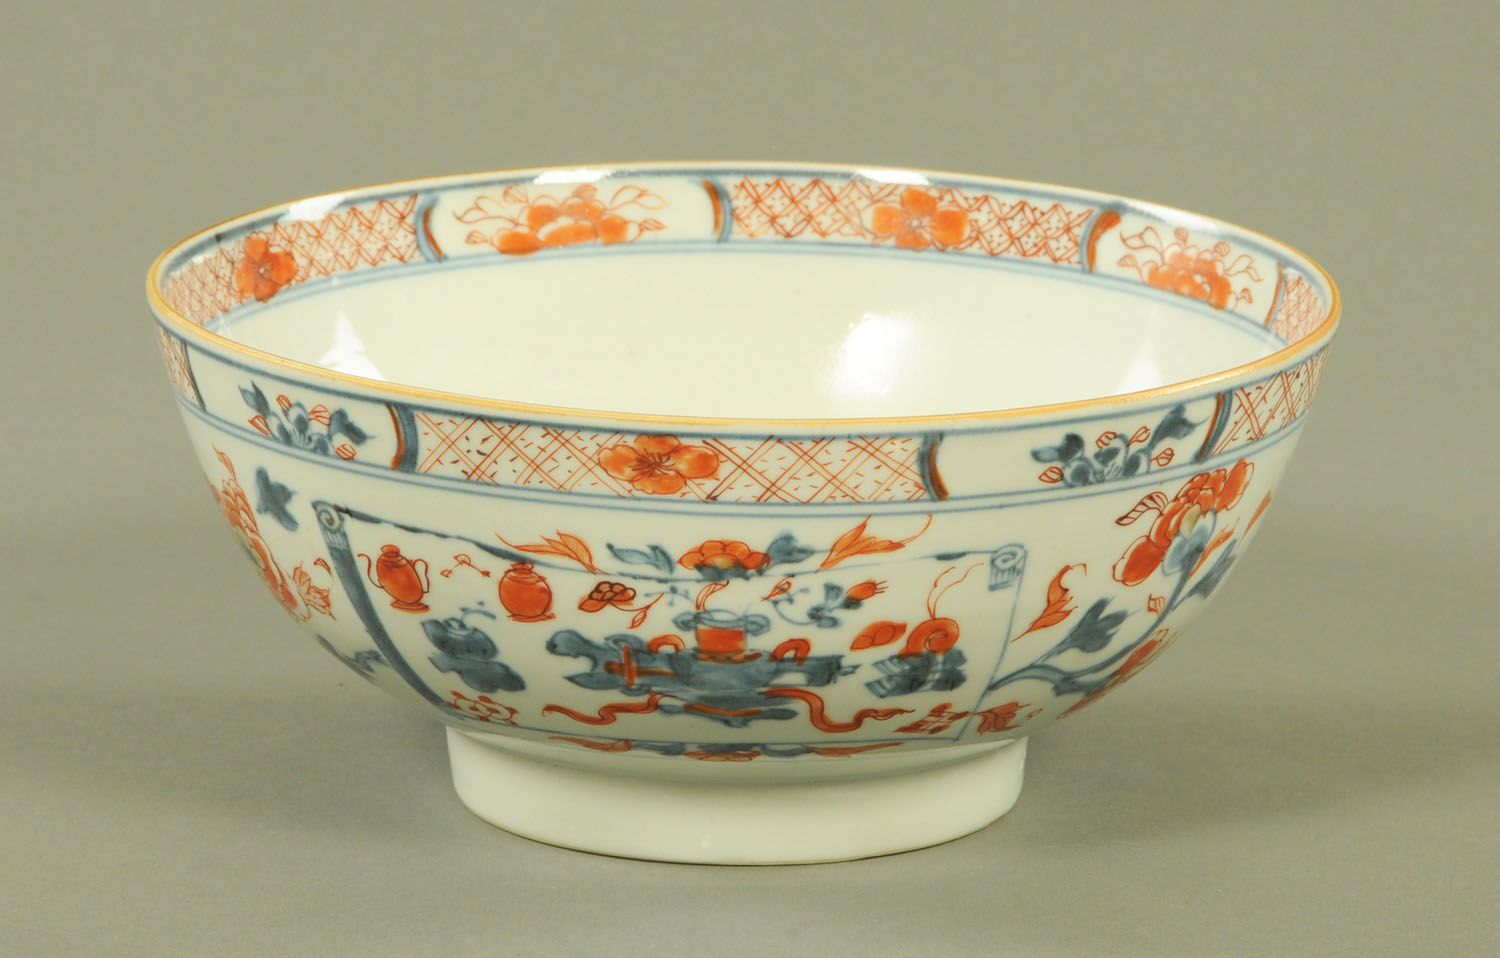 An 18th century Chinese Imari porcelain bowl,